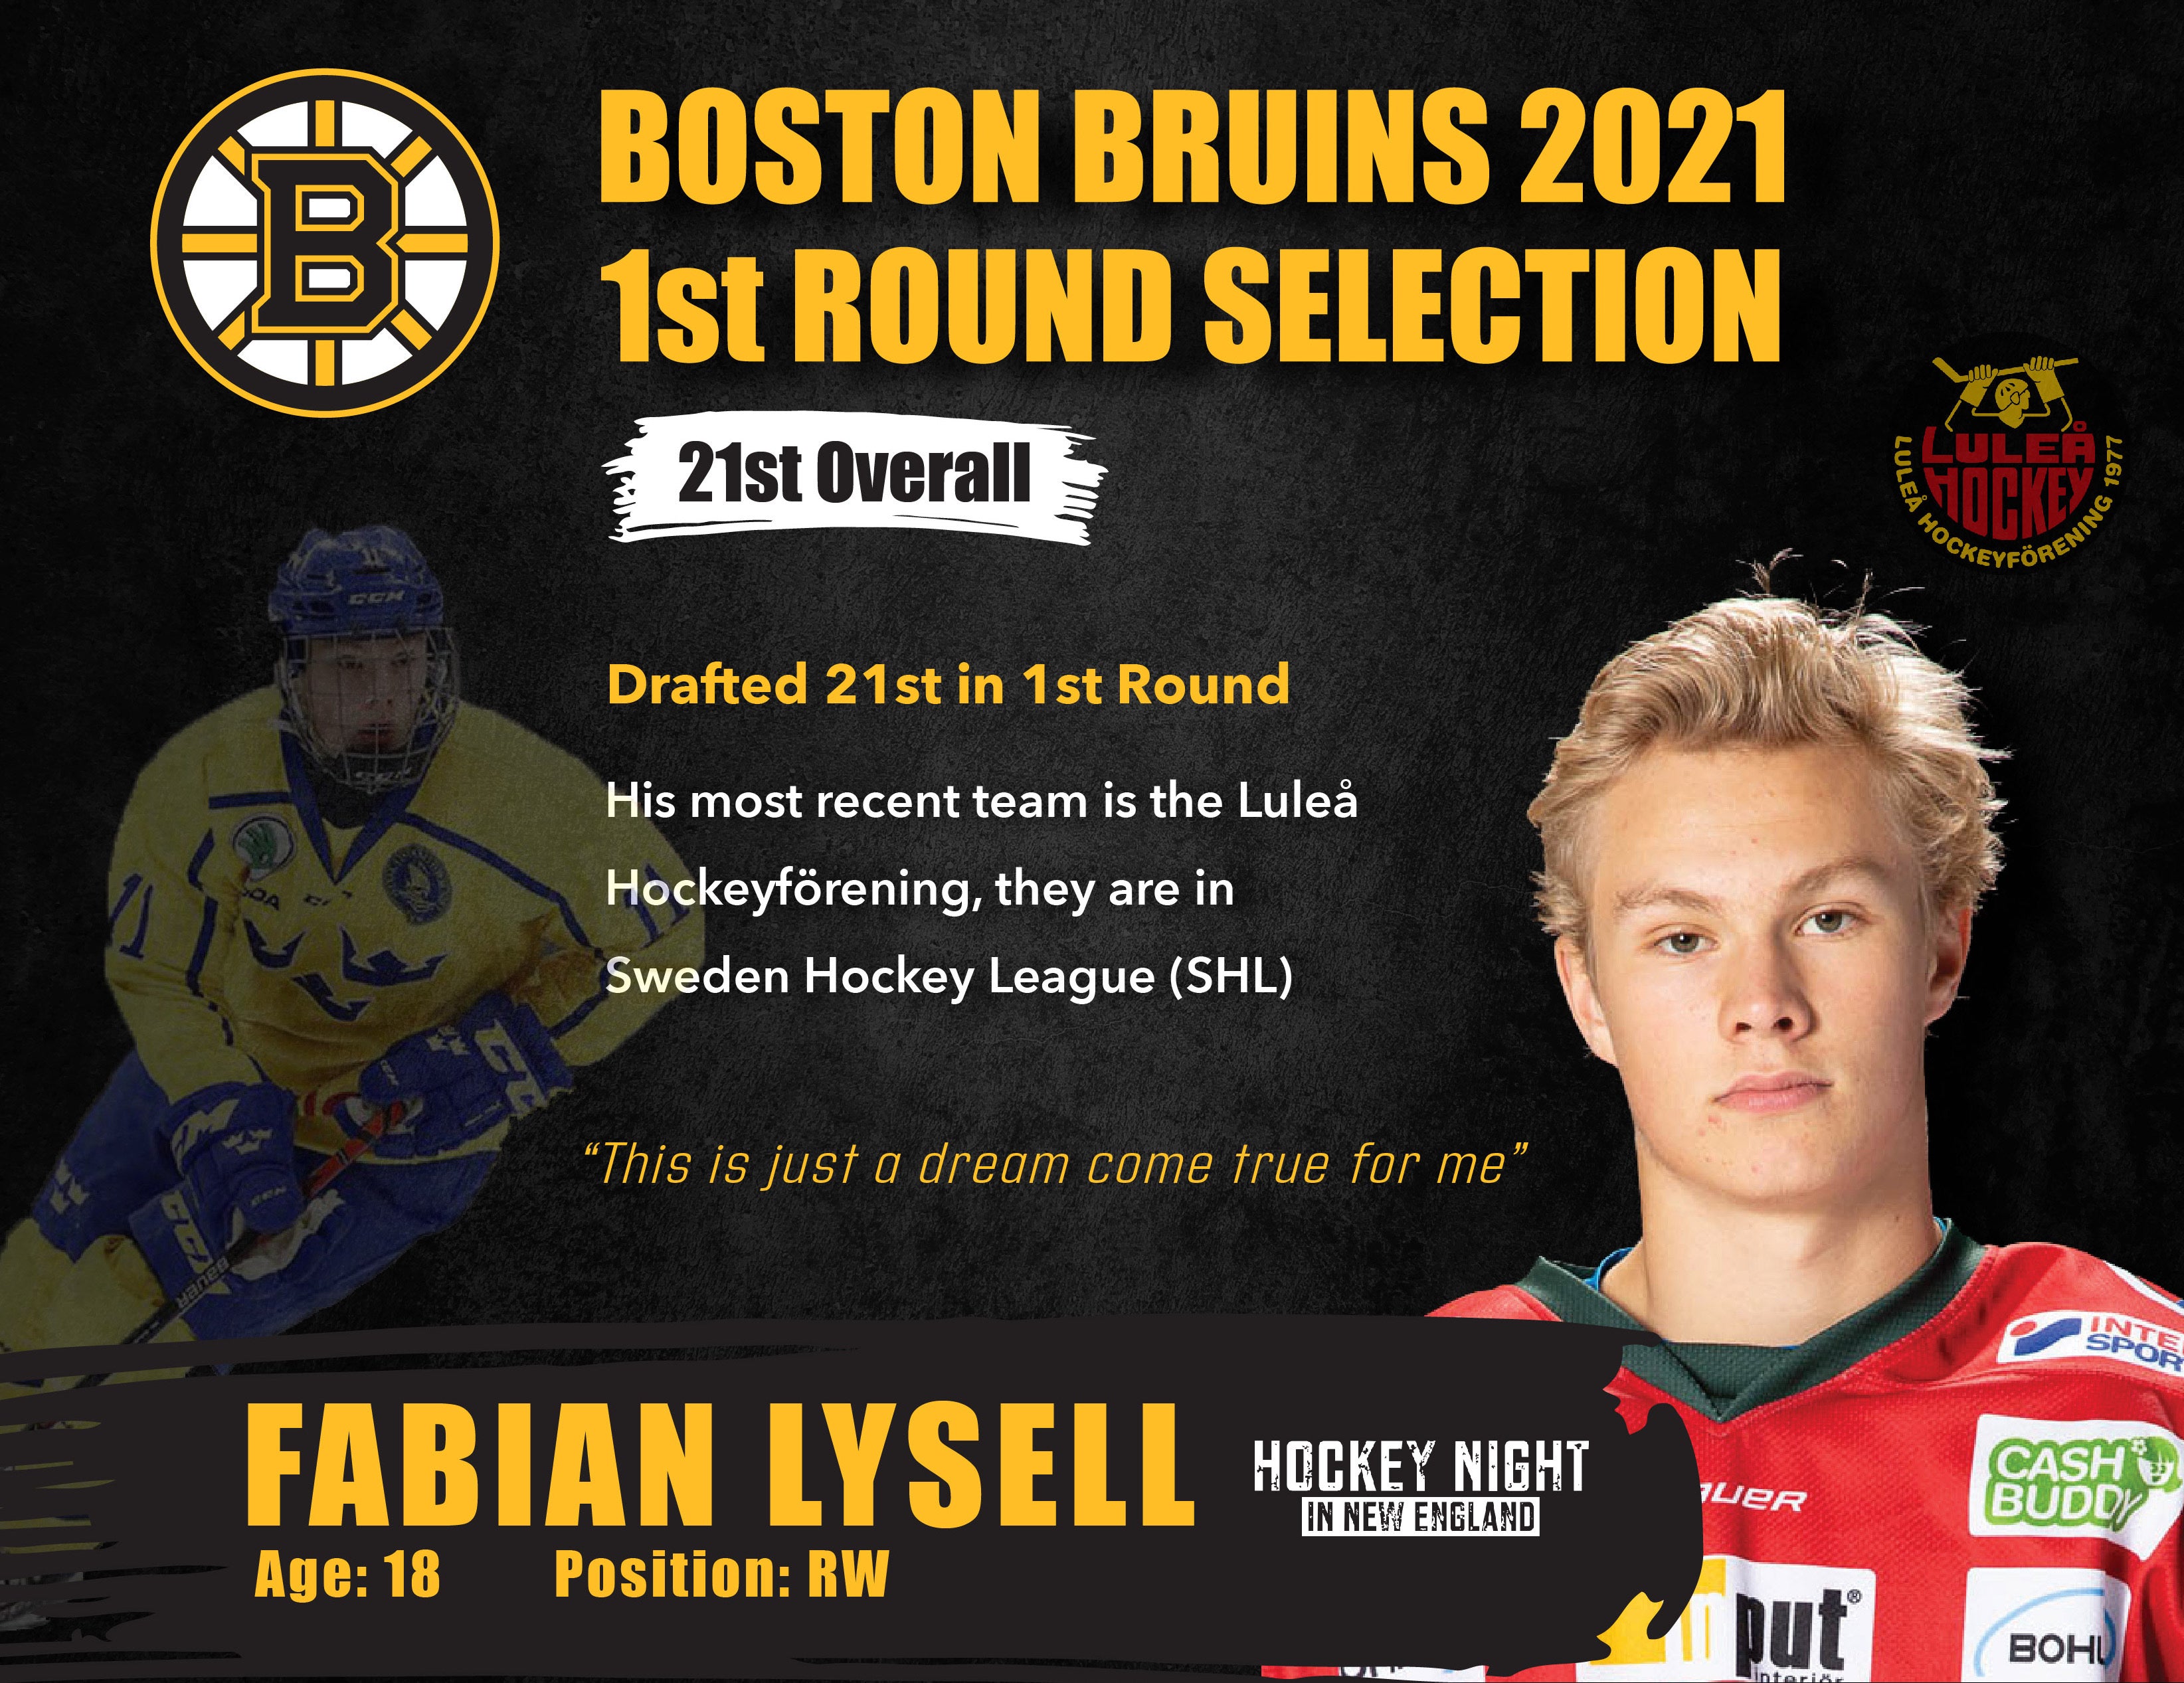 Bruins Draft Fabian Lysell 21st Overall, Full Breakdown